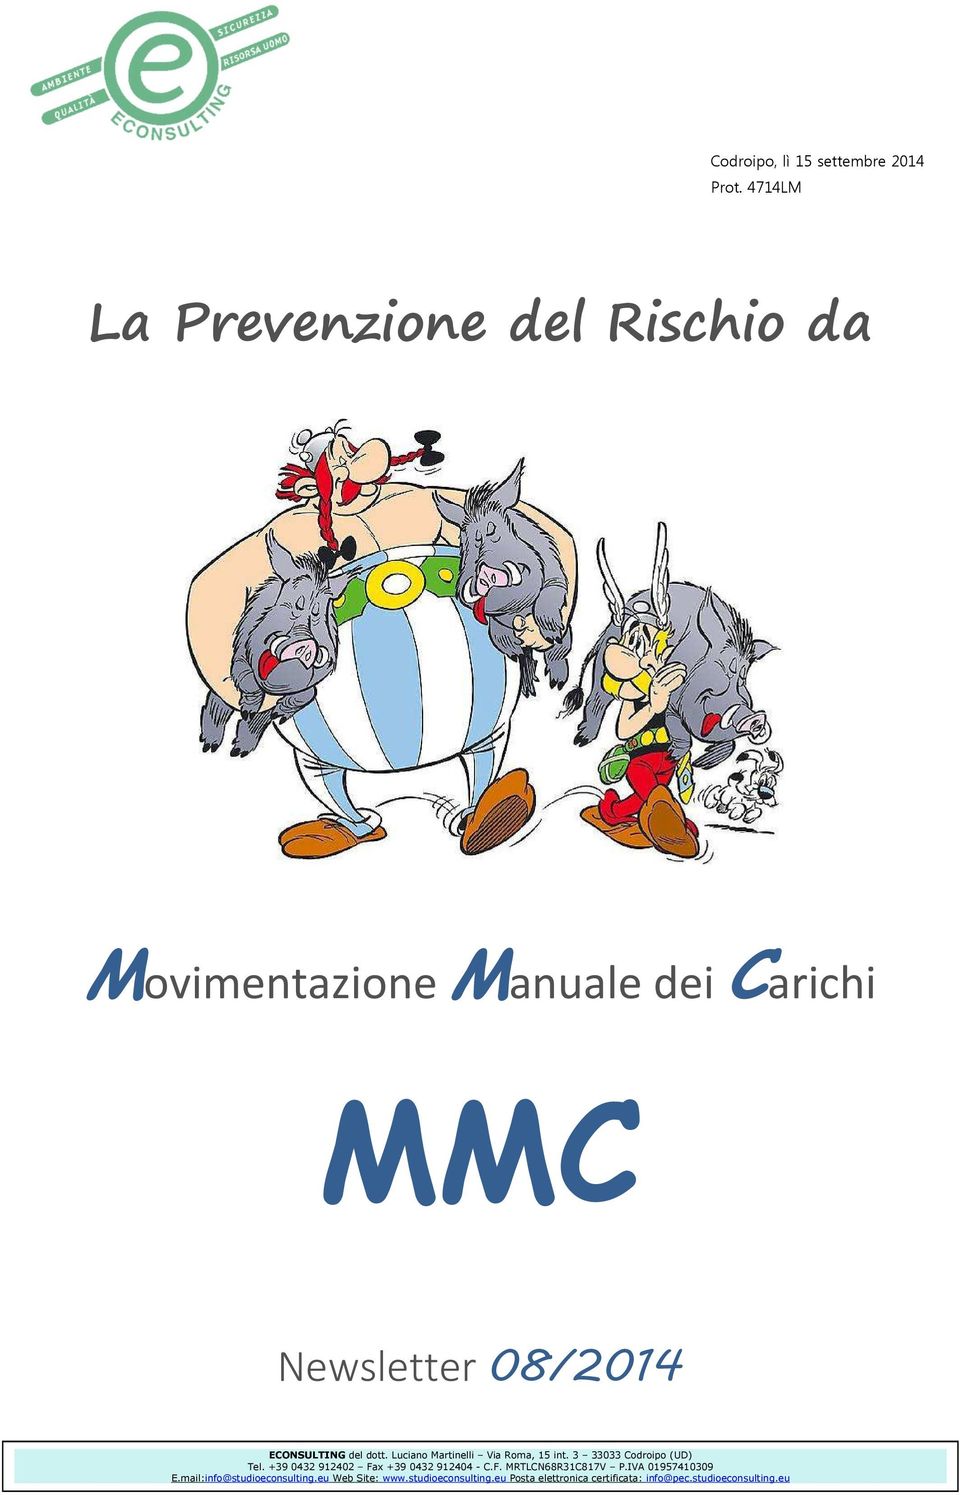 ECONSULTING del dott. Luciano Martinelli Via Roma, 15 int. 3 33033 Codroipo (UD) Tel.